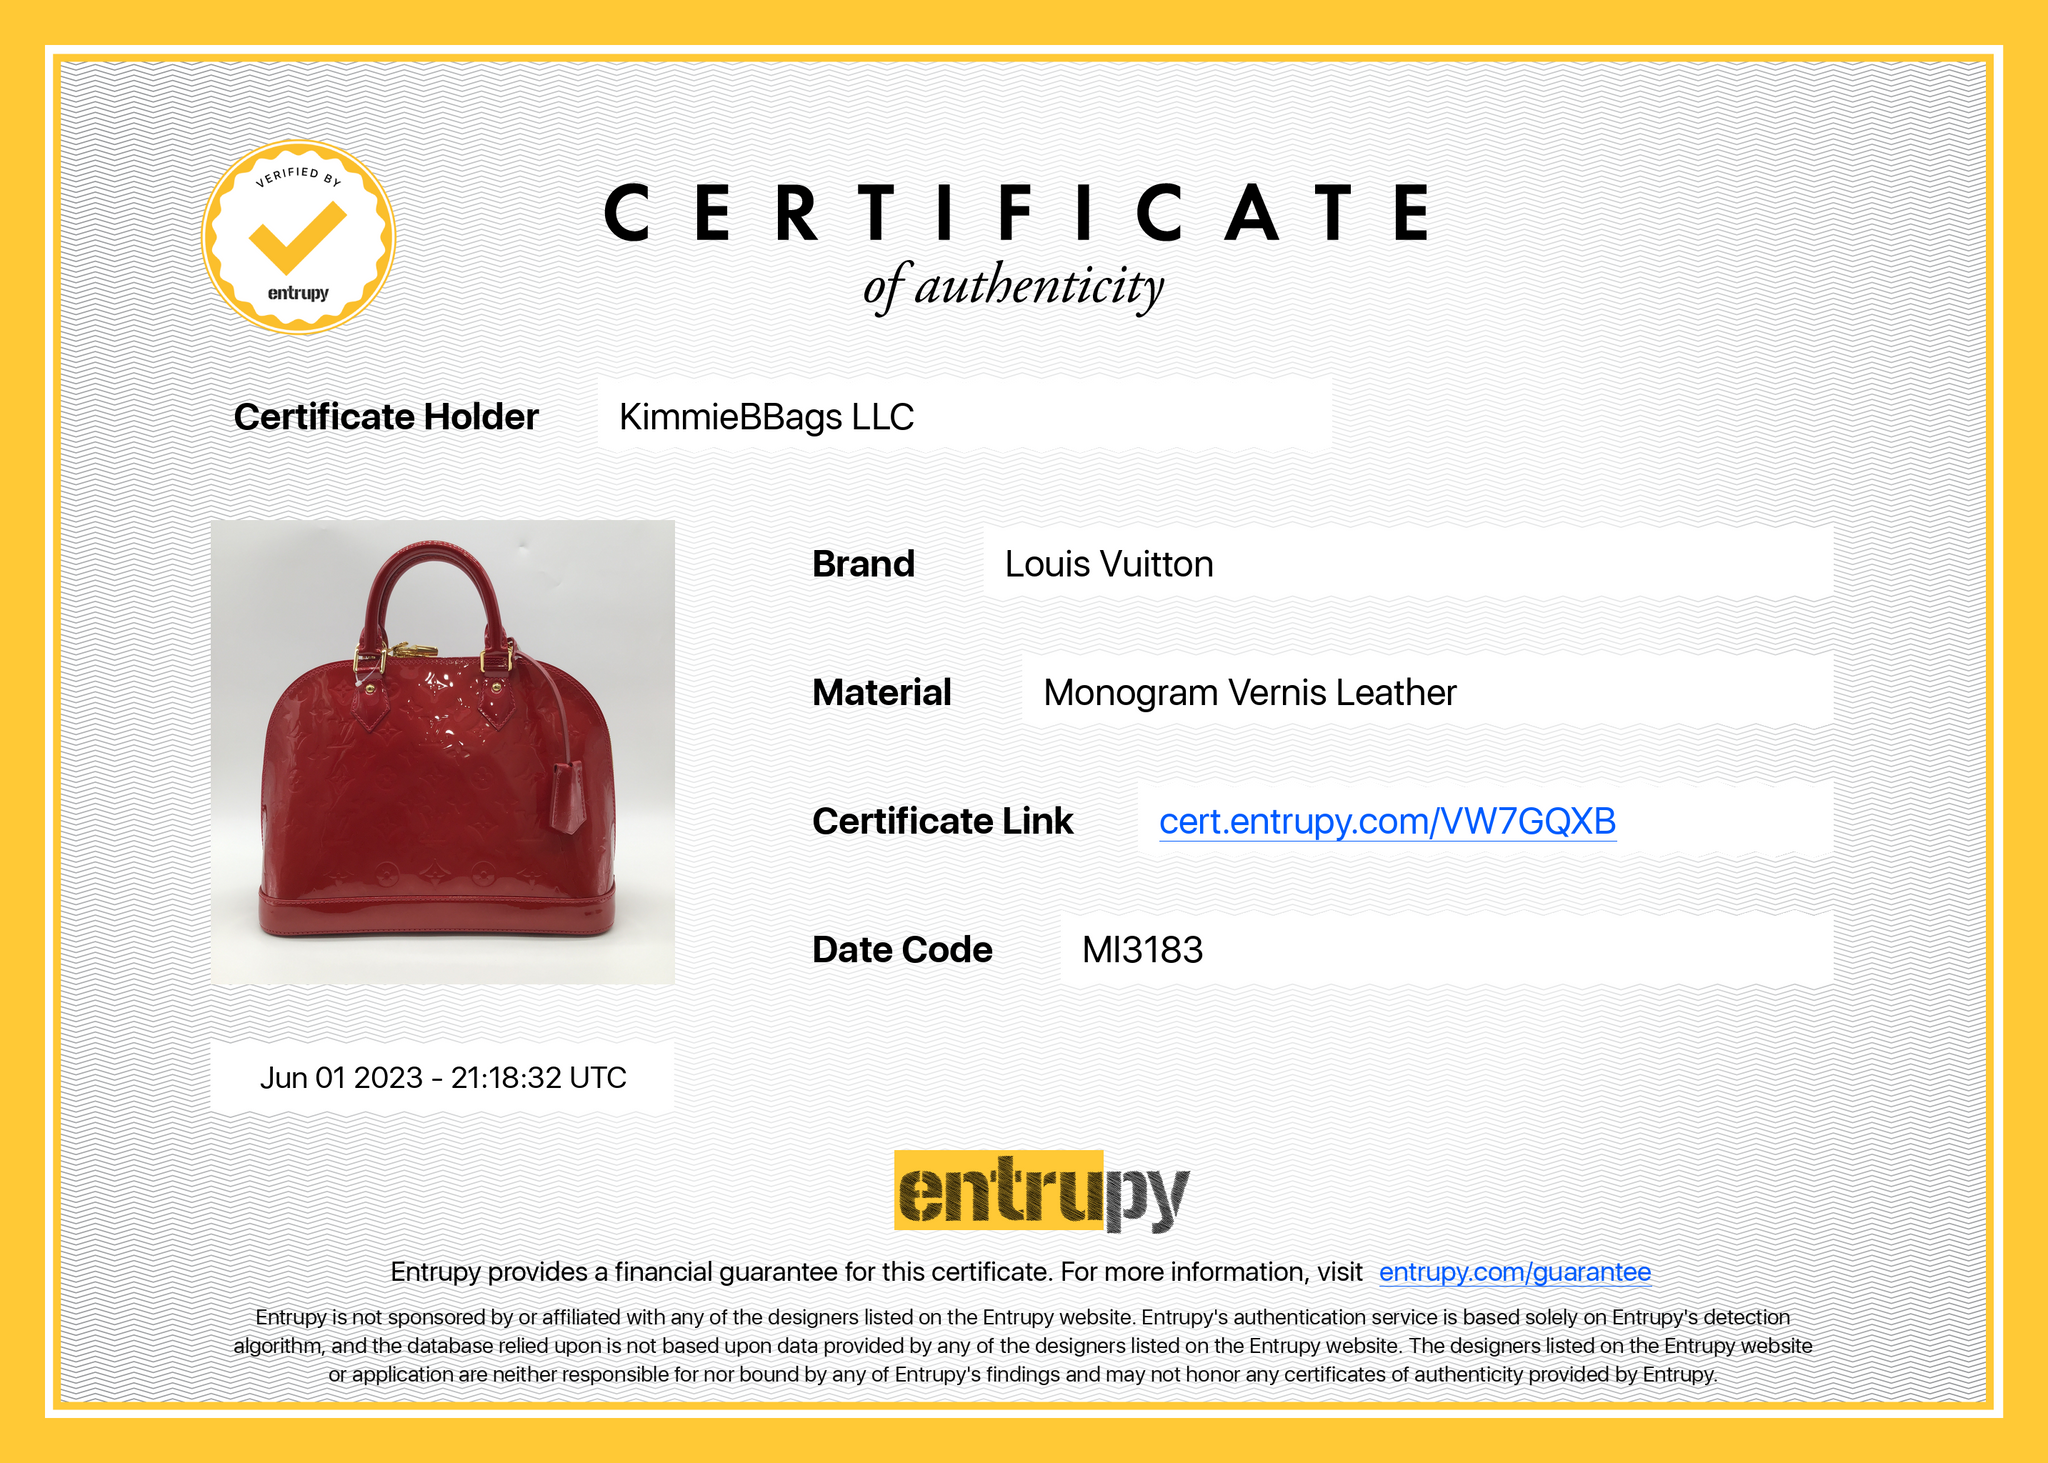 Louis Vuitton Monogram Vernis Lead PM Hand Bag Red M91990 -  HealthdesignShops - BRAVEST STUDIOS PAISLEY LOUIS VUITTON SHORTS BLUE YELLOW